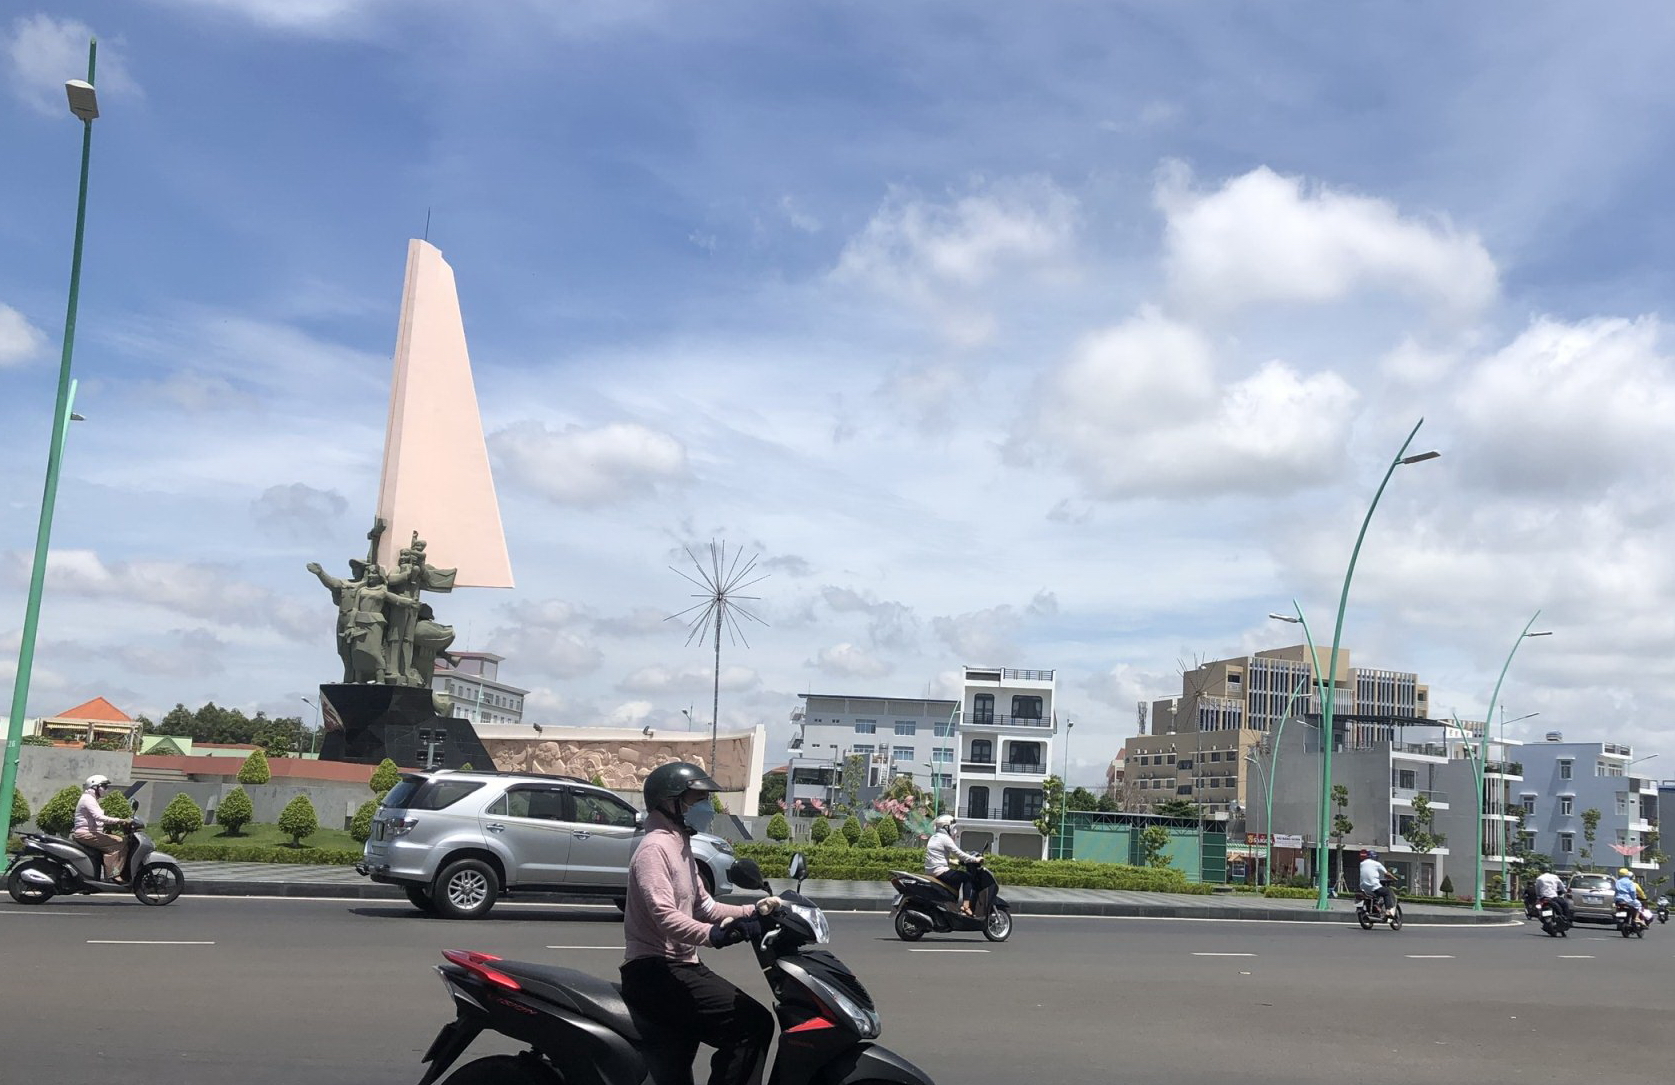 Bình Thuận: Đường Lê Duẩn trục giao thông quan trọng kết nối trung tâm TP. Phan Thiết và Khu du lịch Quốc gia Mũi Né - Ảnh 1.